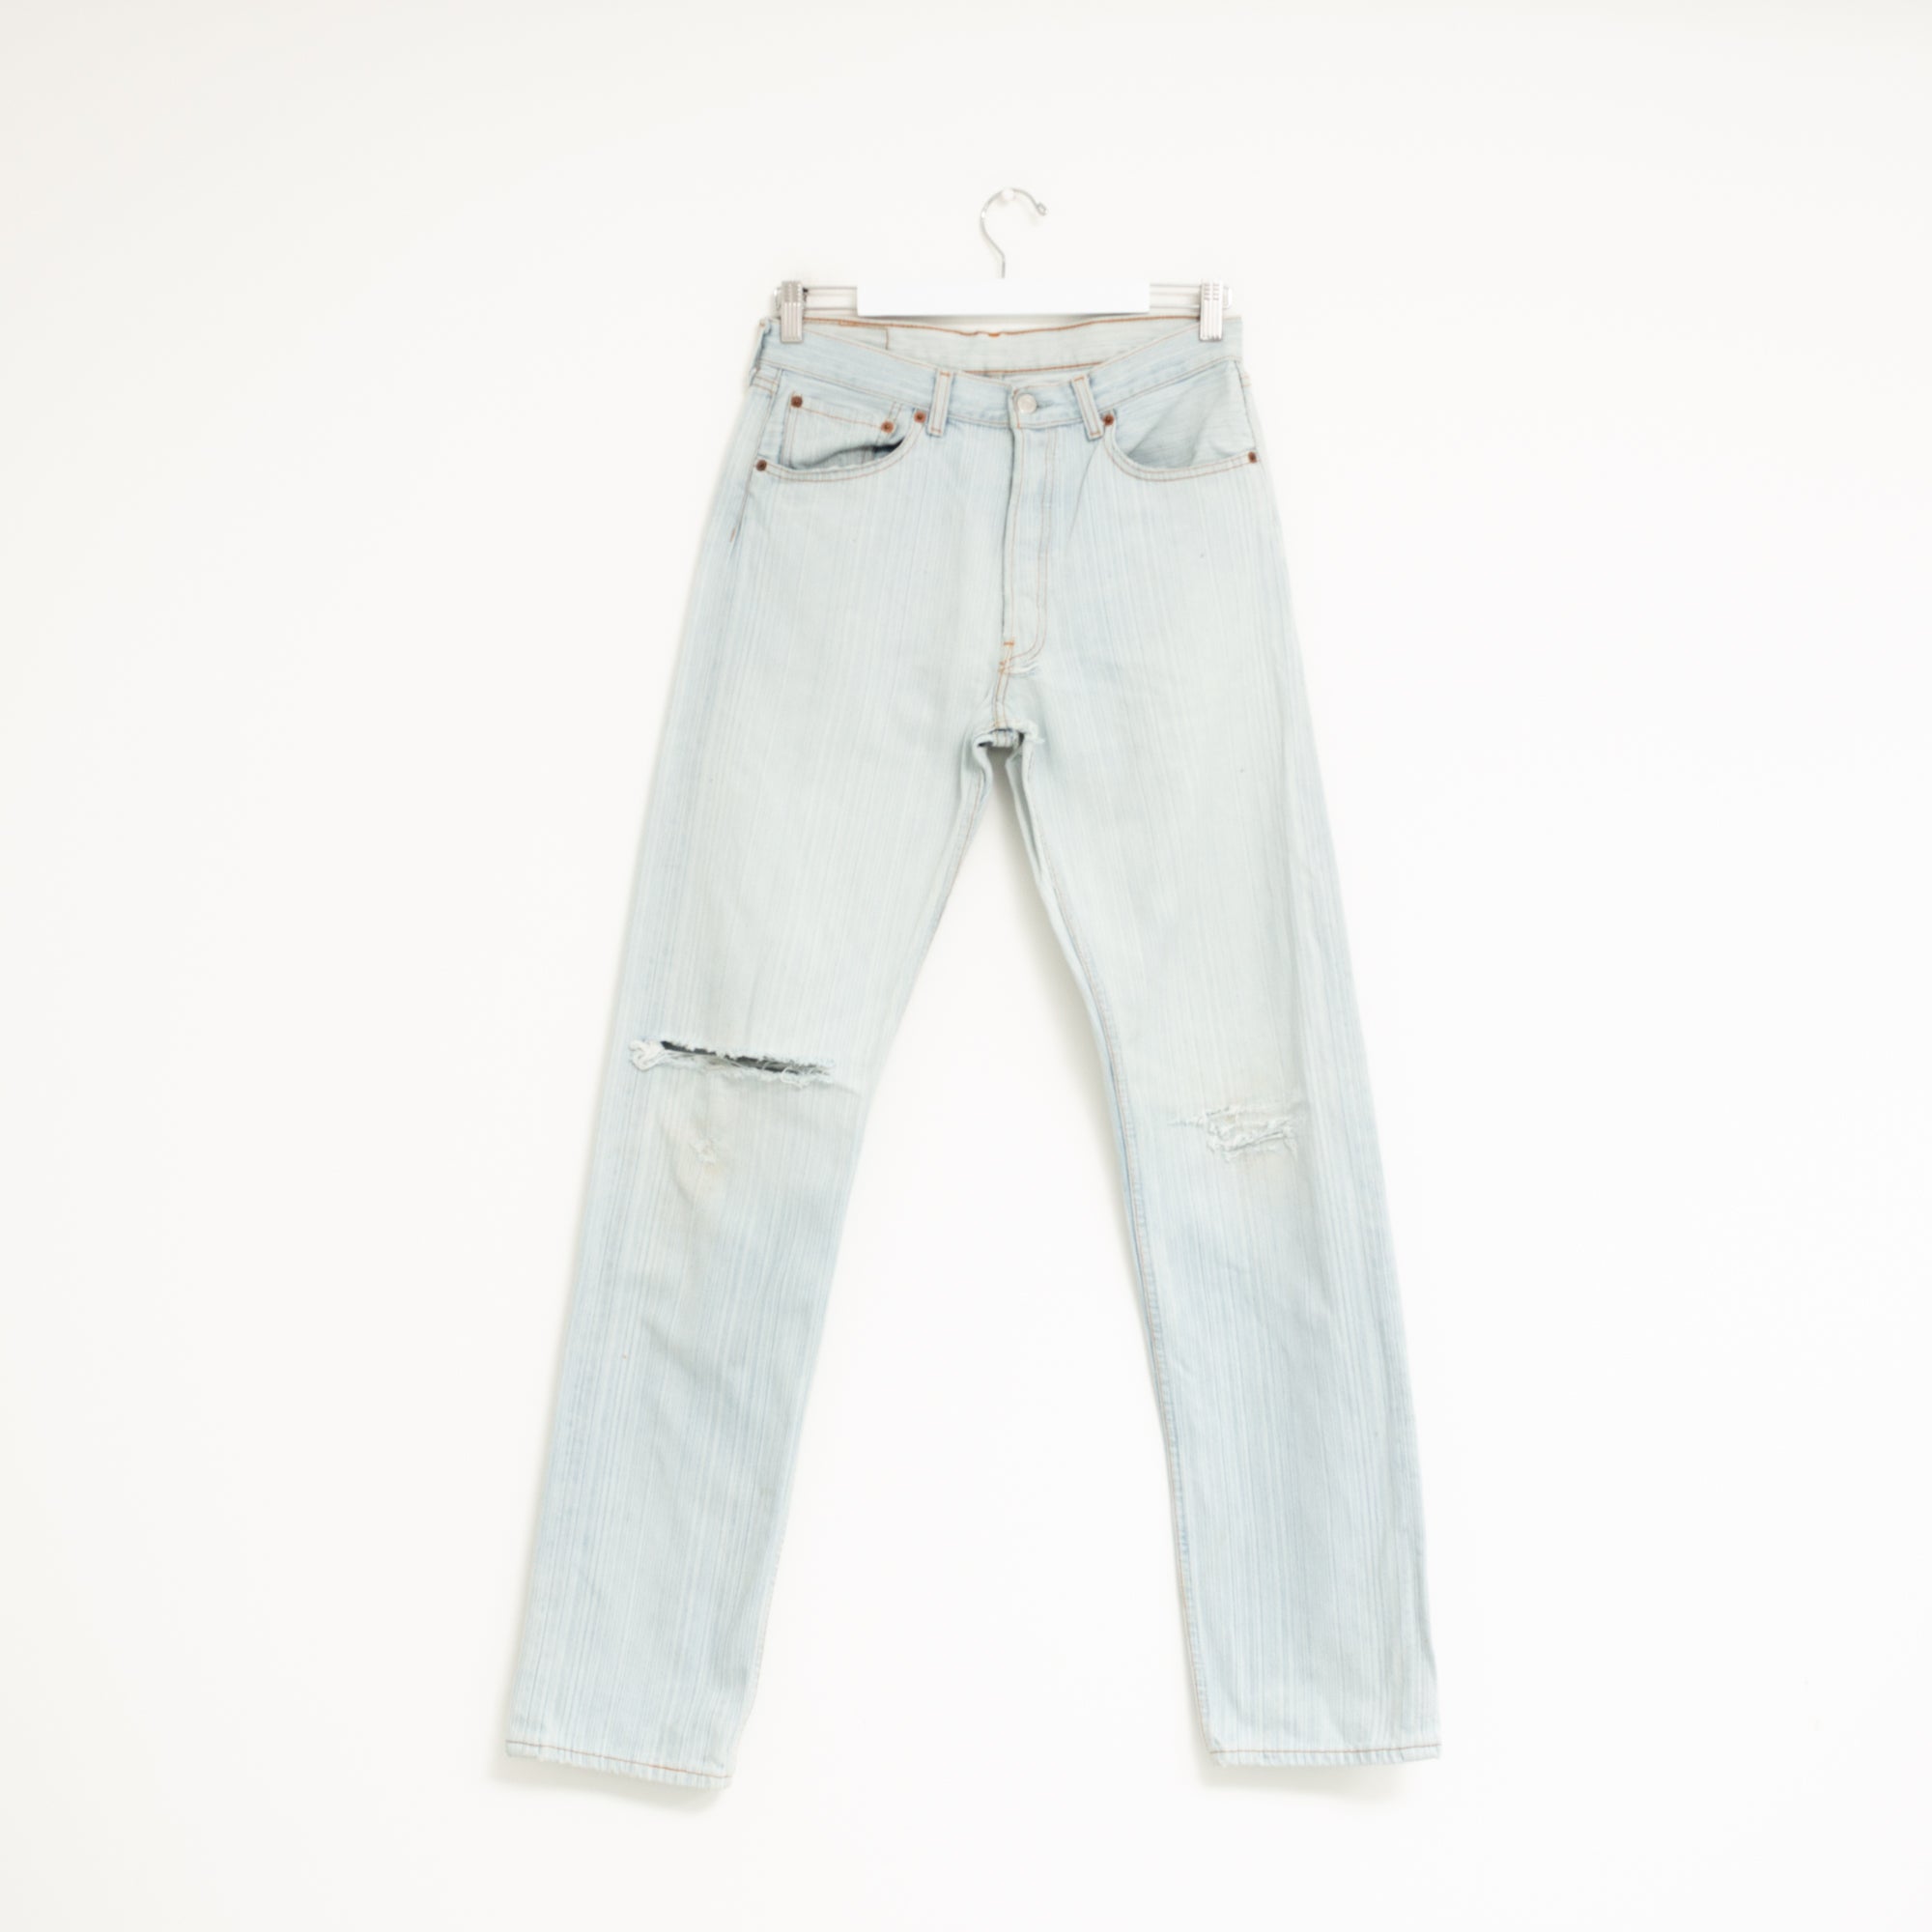 "DISTRESSED" Jeans W31 L35